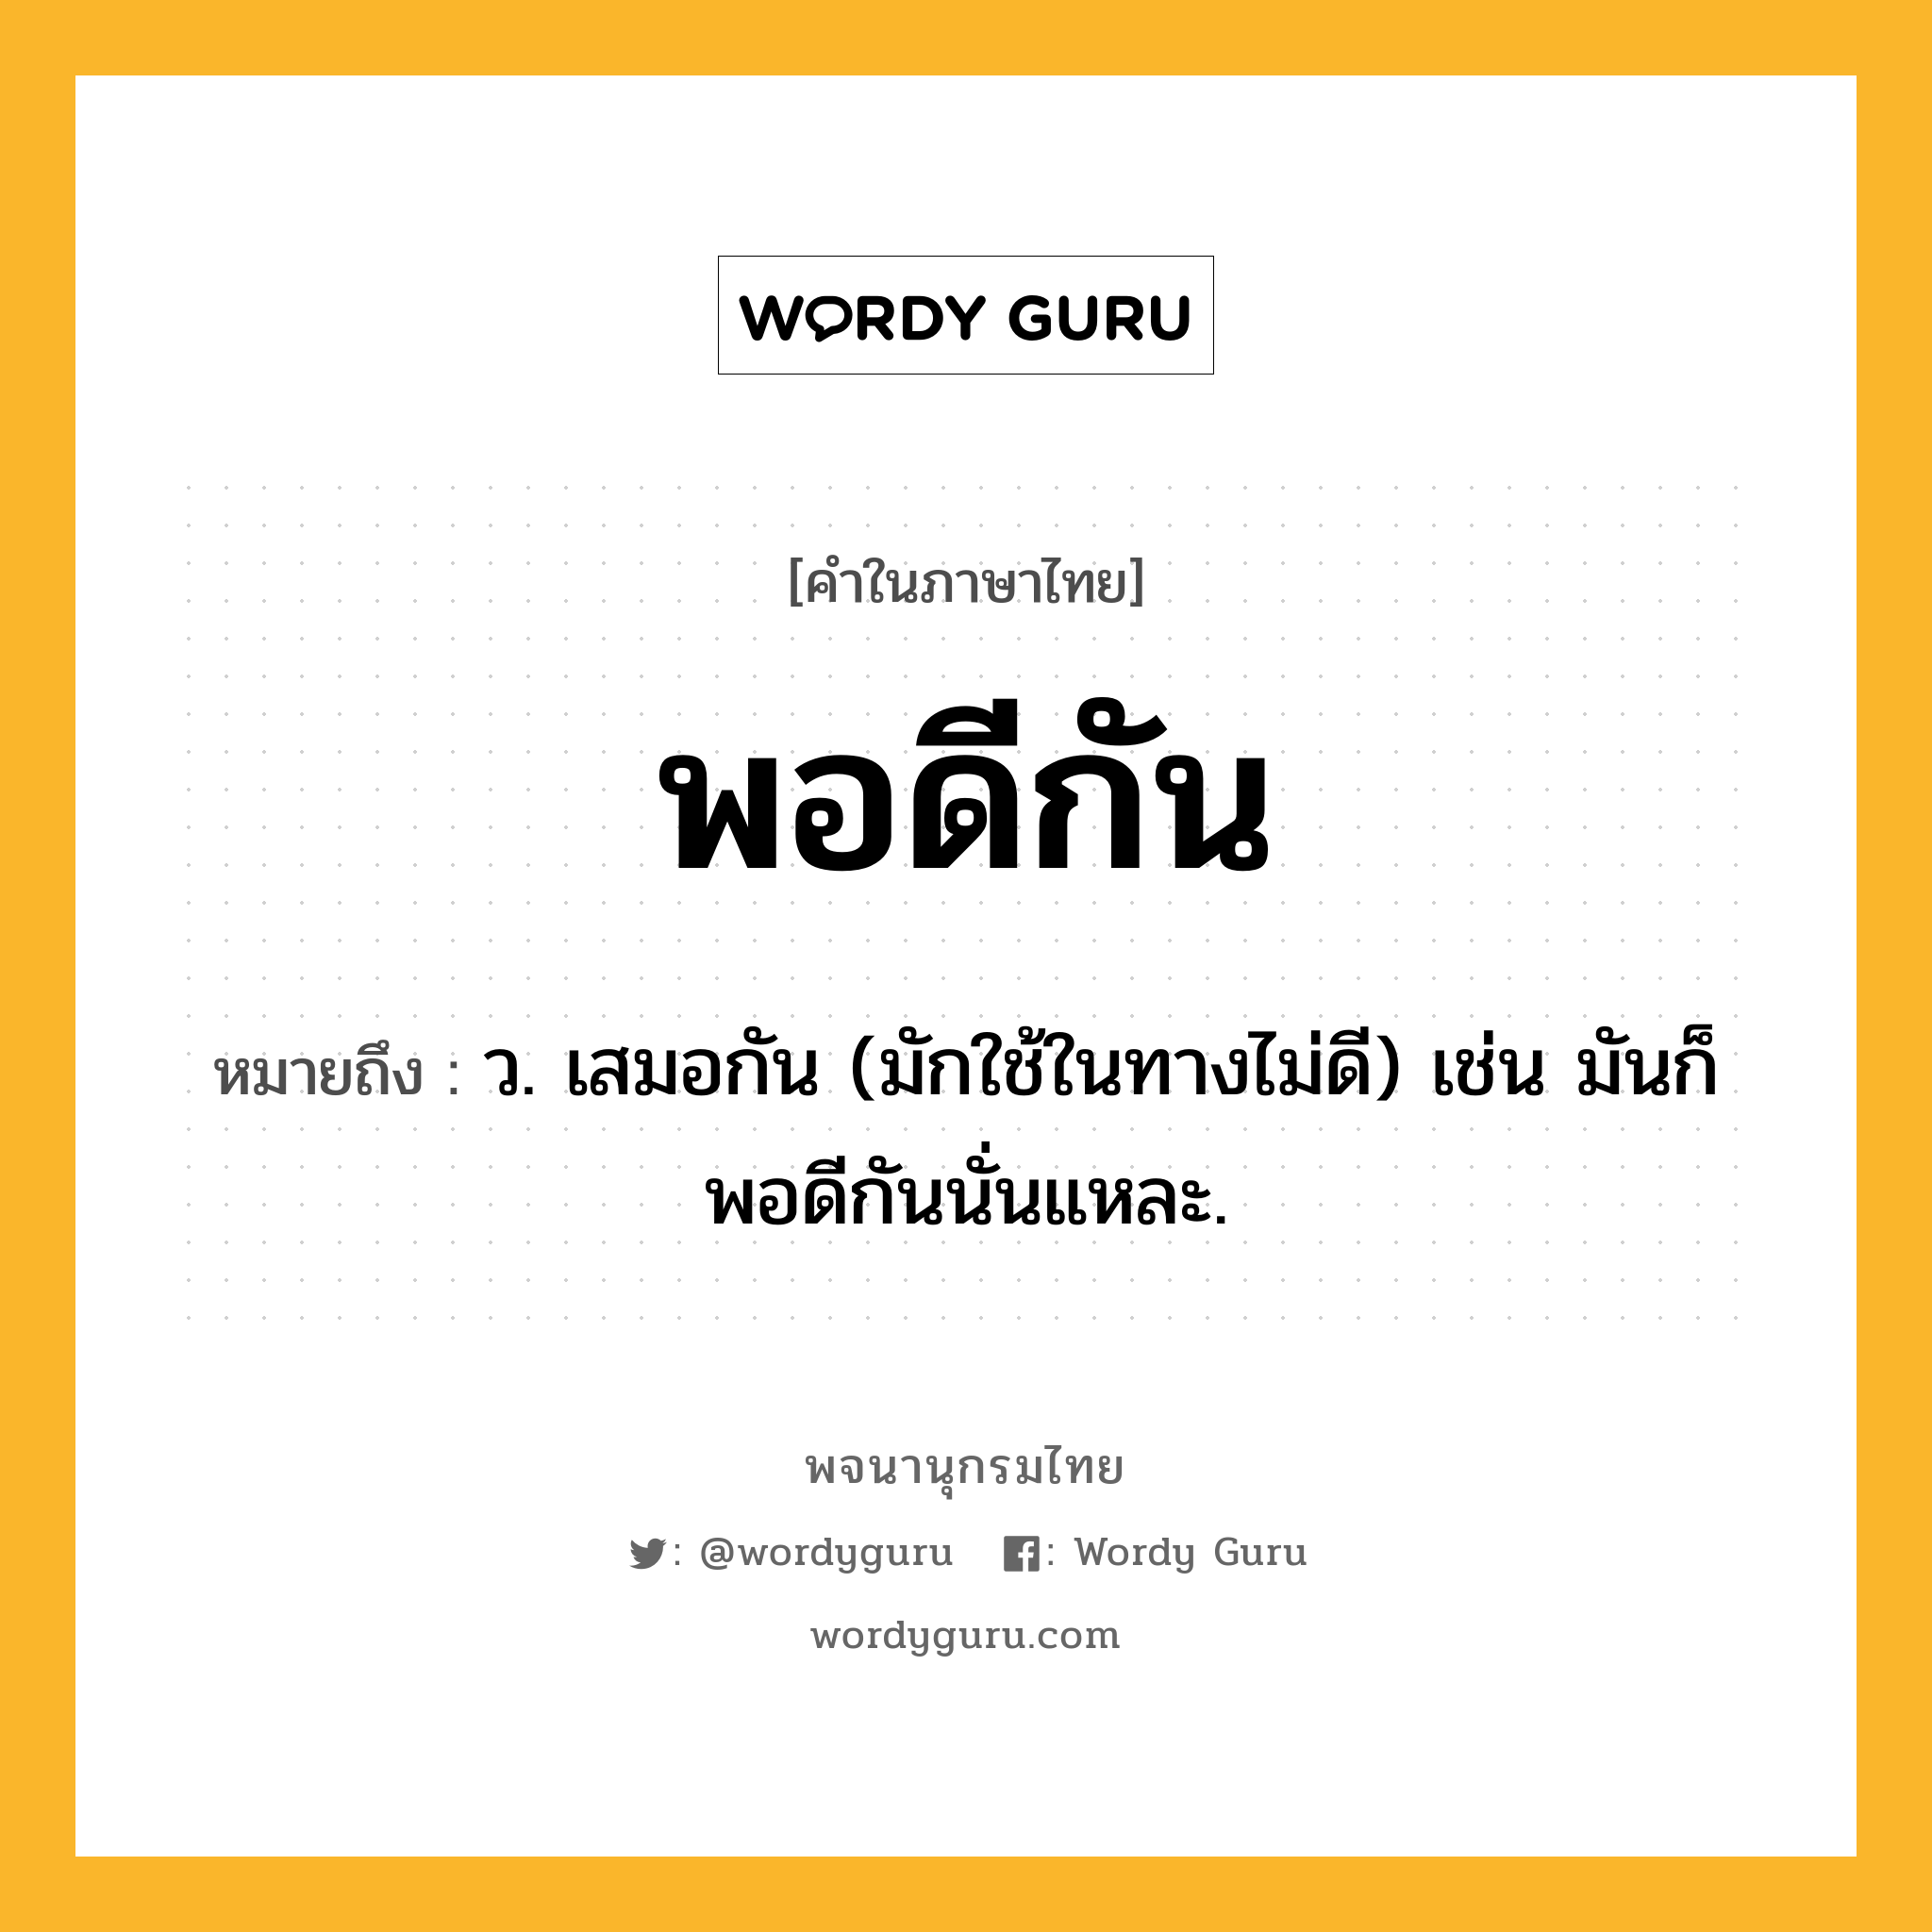 พอดีกัน หมายถึงอะไร?, คำในภาษาไทย พอดีกัน หมายถึง ว. เสมอกัน (มักใช้ในทางไม่ดี) เช่น มันก็พอดีกันนั่นแหละ.